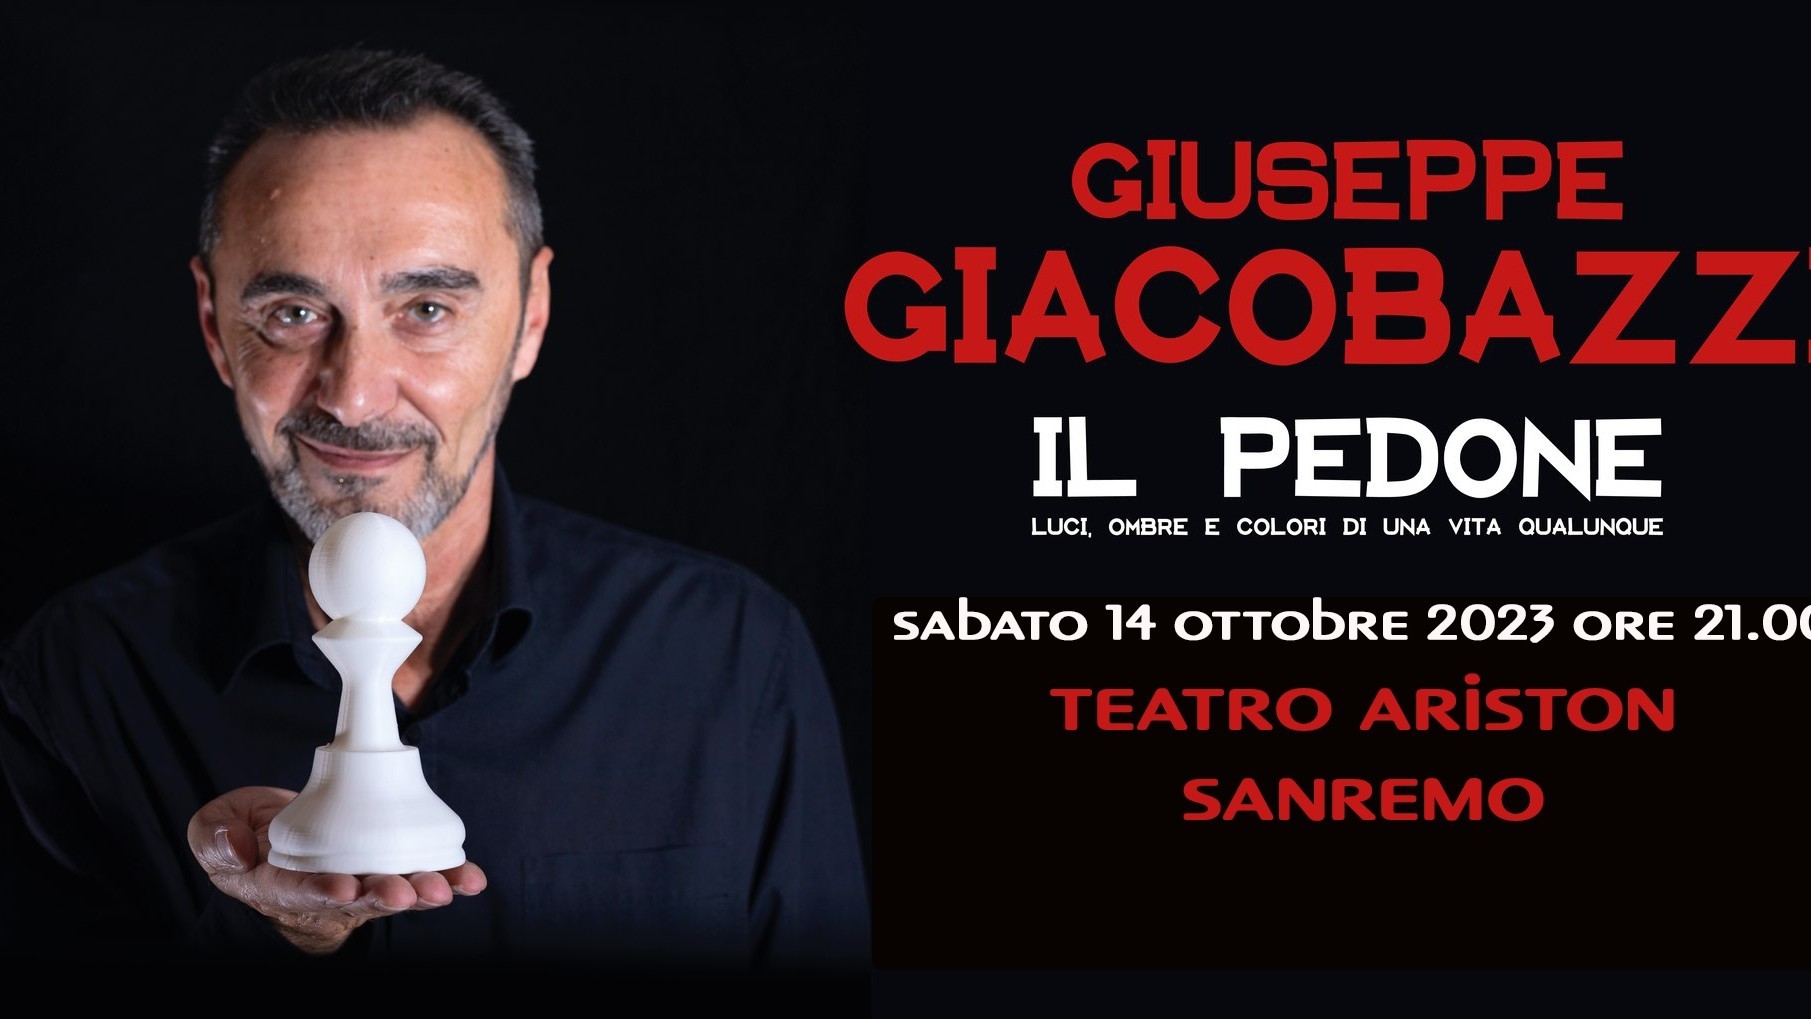 Giuseppe Giacobazzi - Il pedone